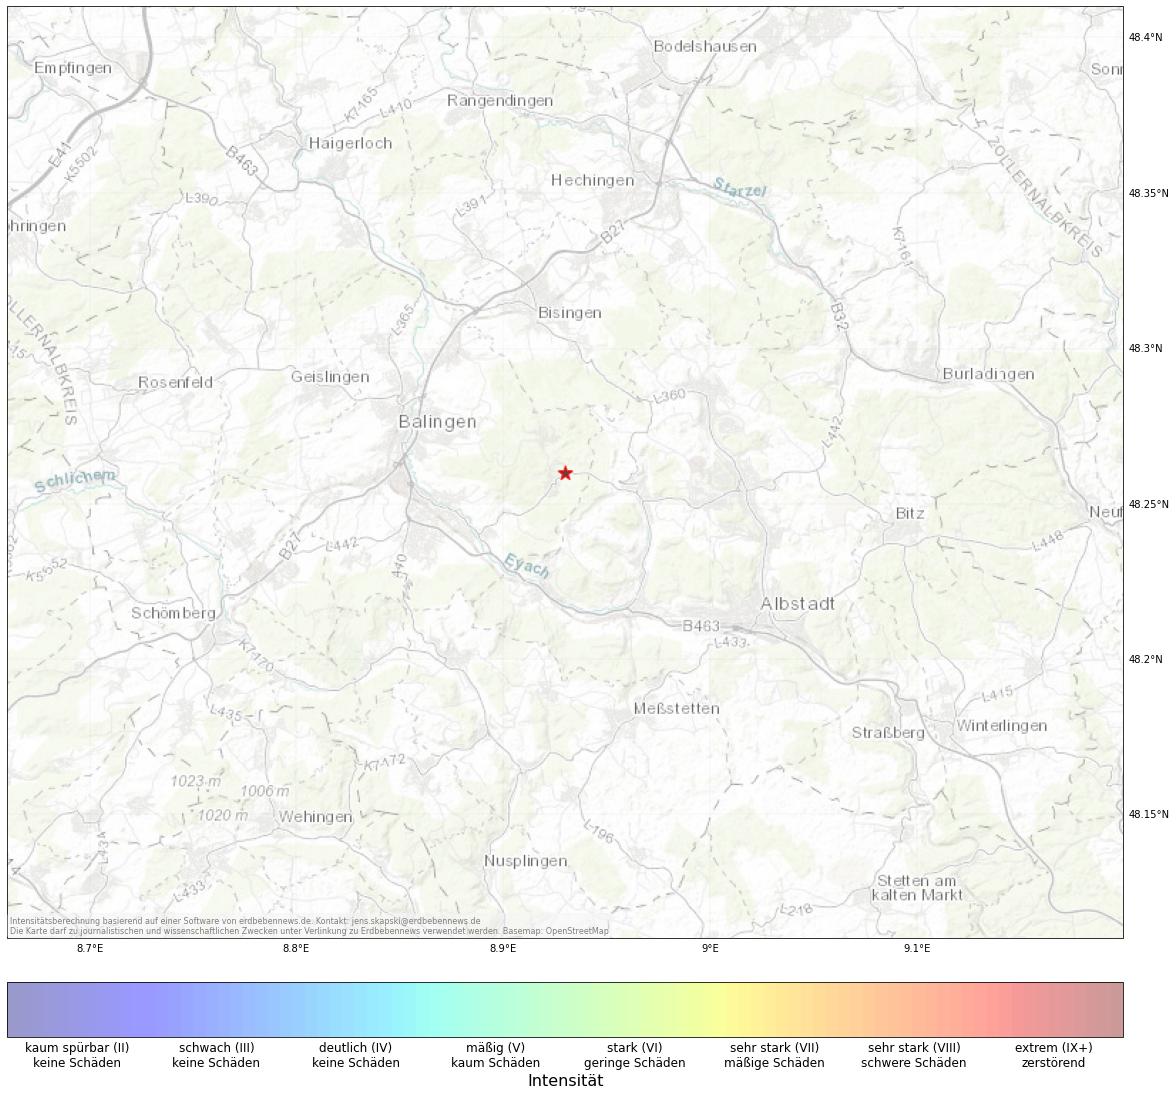 Berechnete Intensität (ShakeMap) des Erdbebens der Stärke 1.7 am 01. January, 23:44 in Deutschland